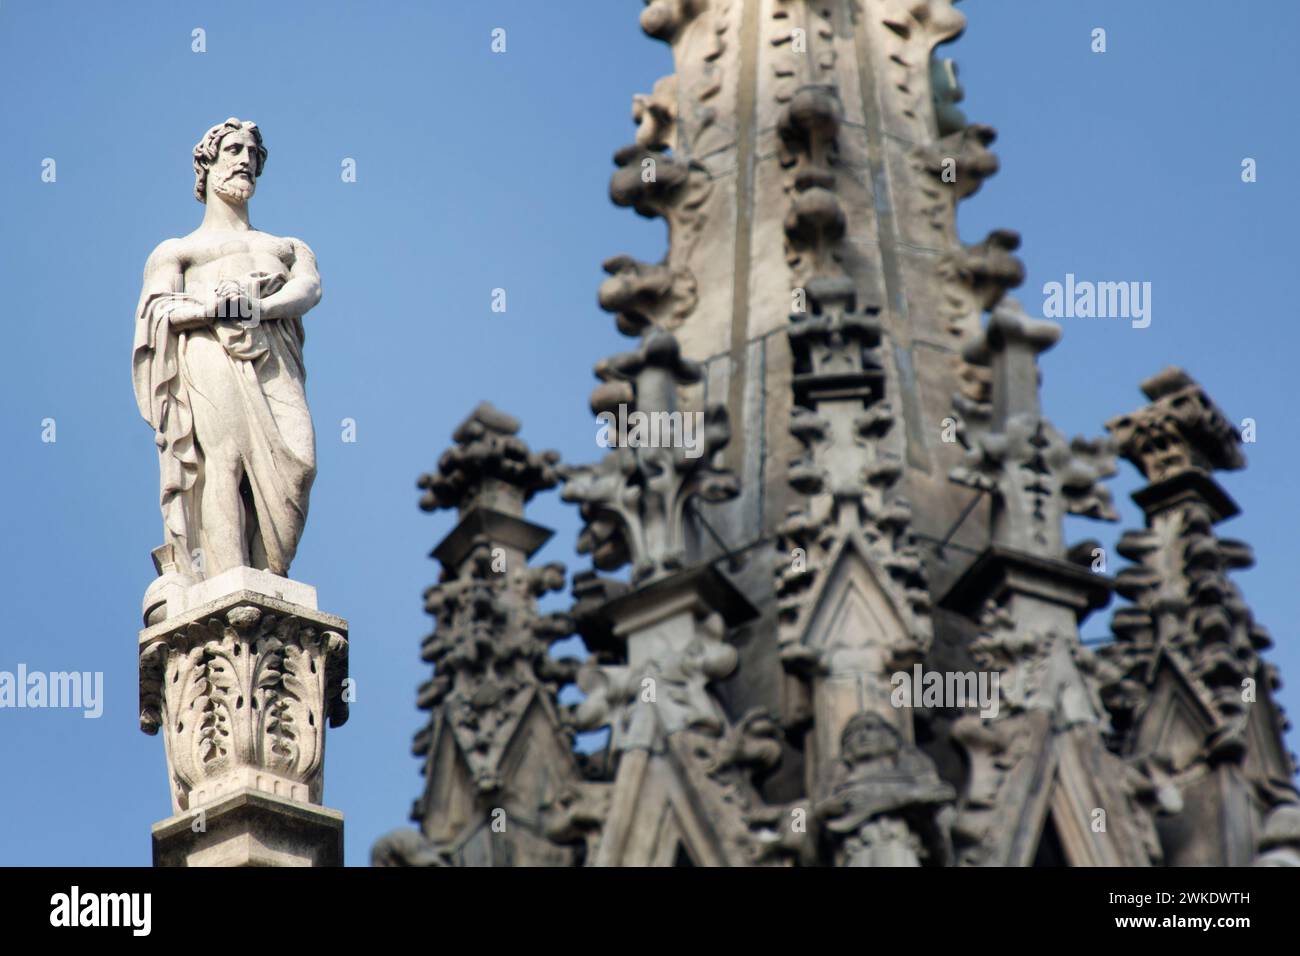 Longinus (sin la lanza) - Catedral de Milán (Duomo) - Milán - Lombardía - Italia Foto de stock